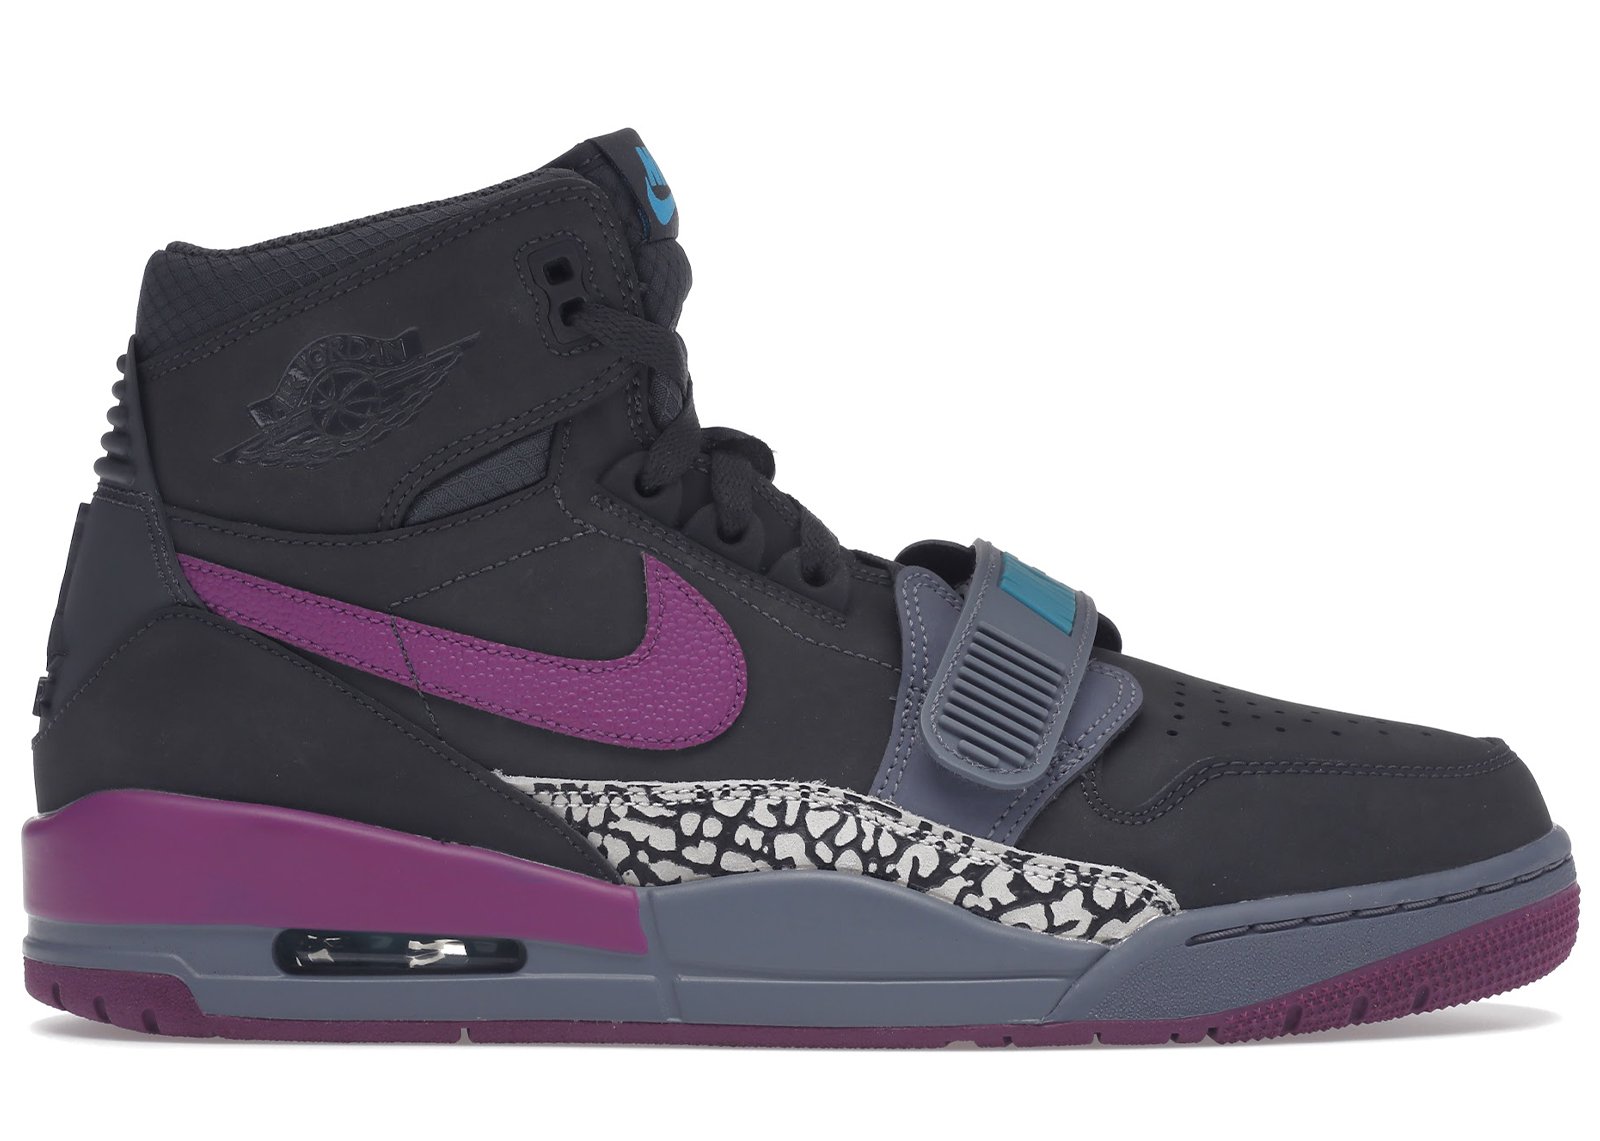 Jordan Legacy 312 Dark Grey Purple sneakers